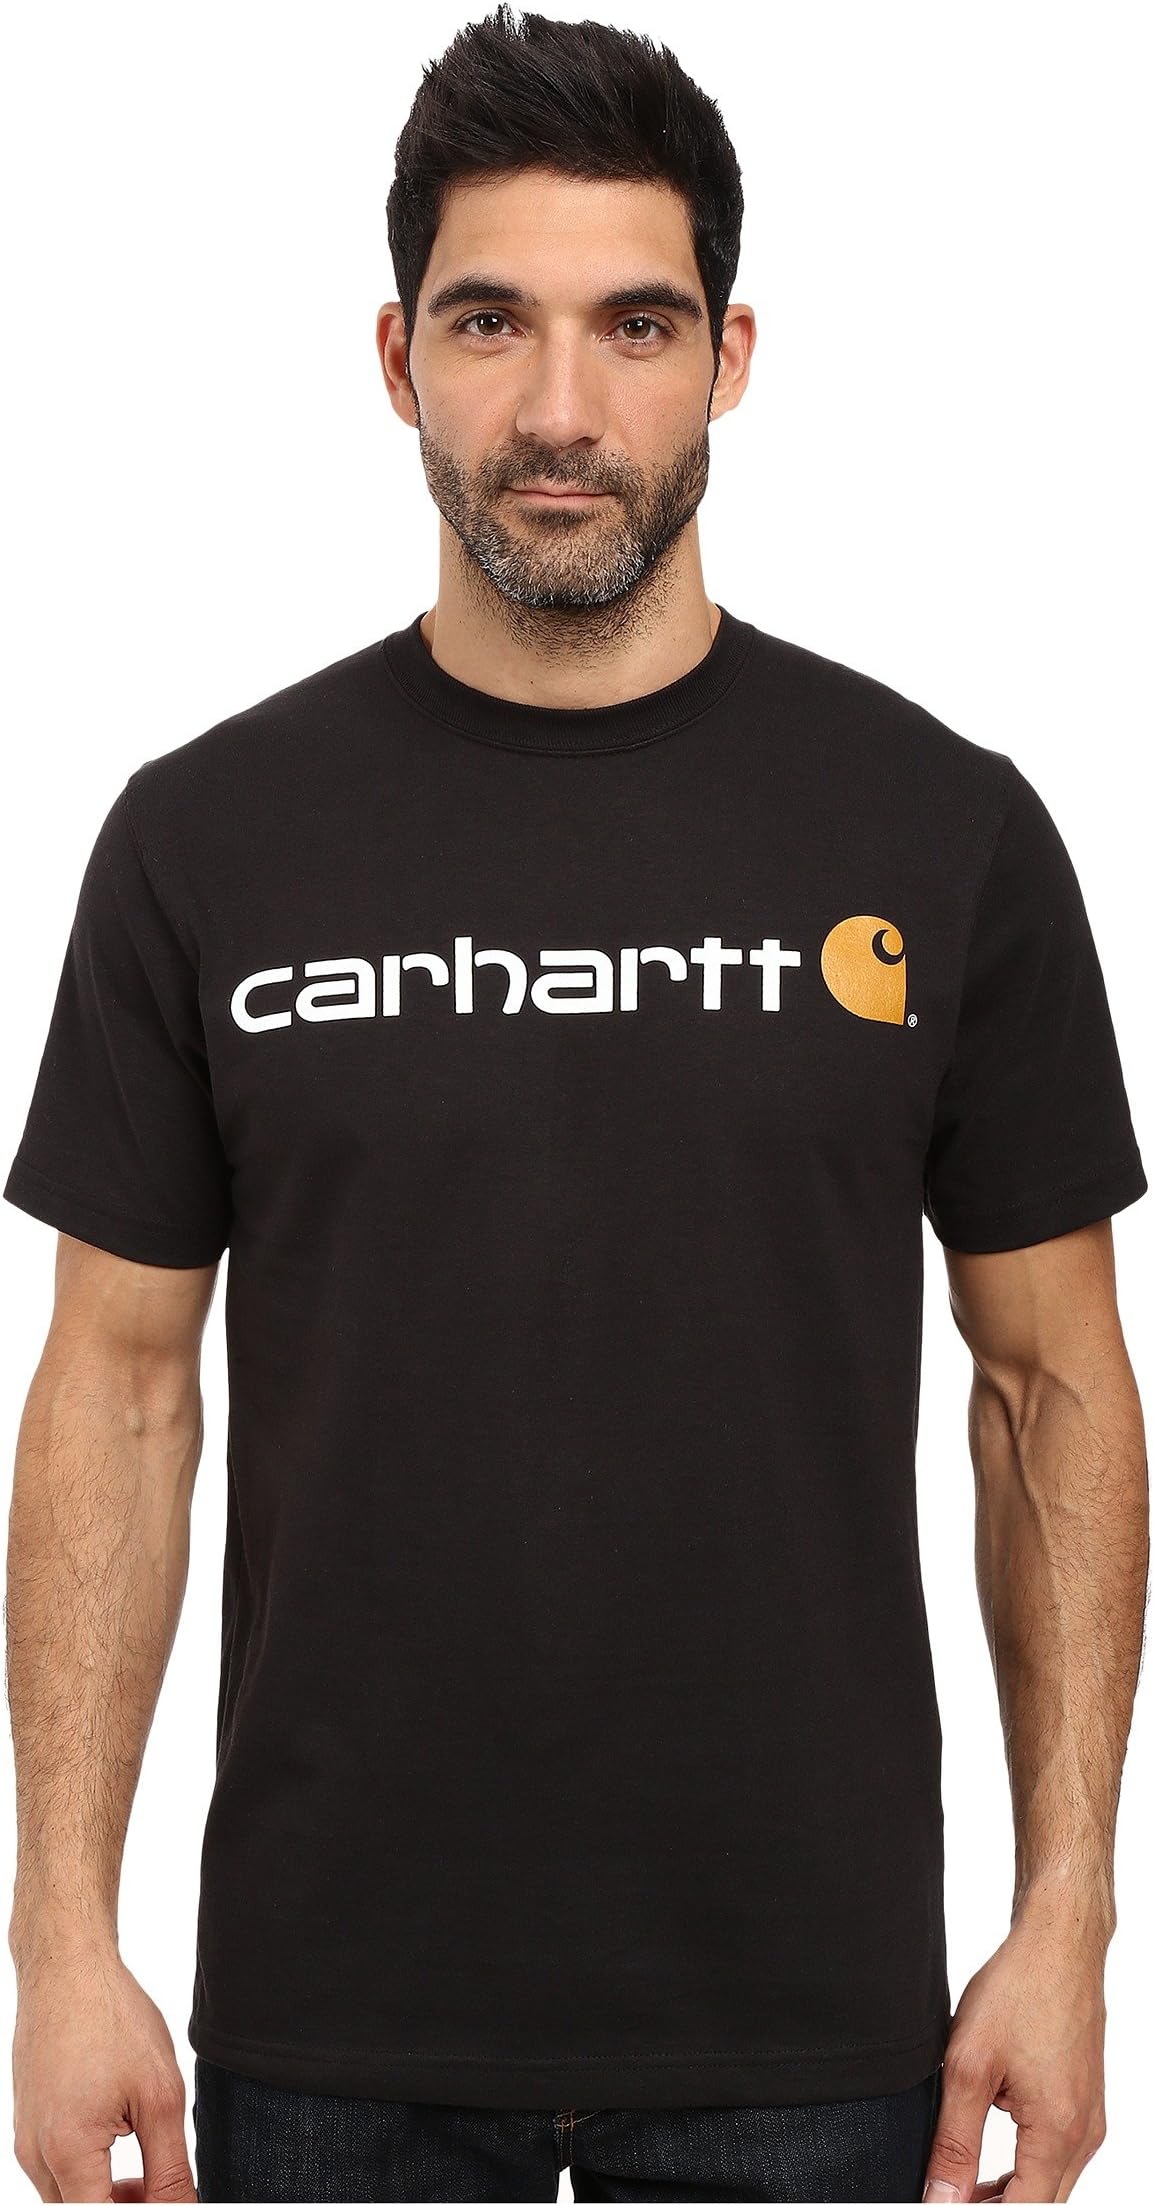 Футболка с фирменным логотипом (S/S) Carhartt, черный футболка с фирменным логотипом s s carhartt цвет marmalade heather